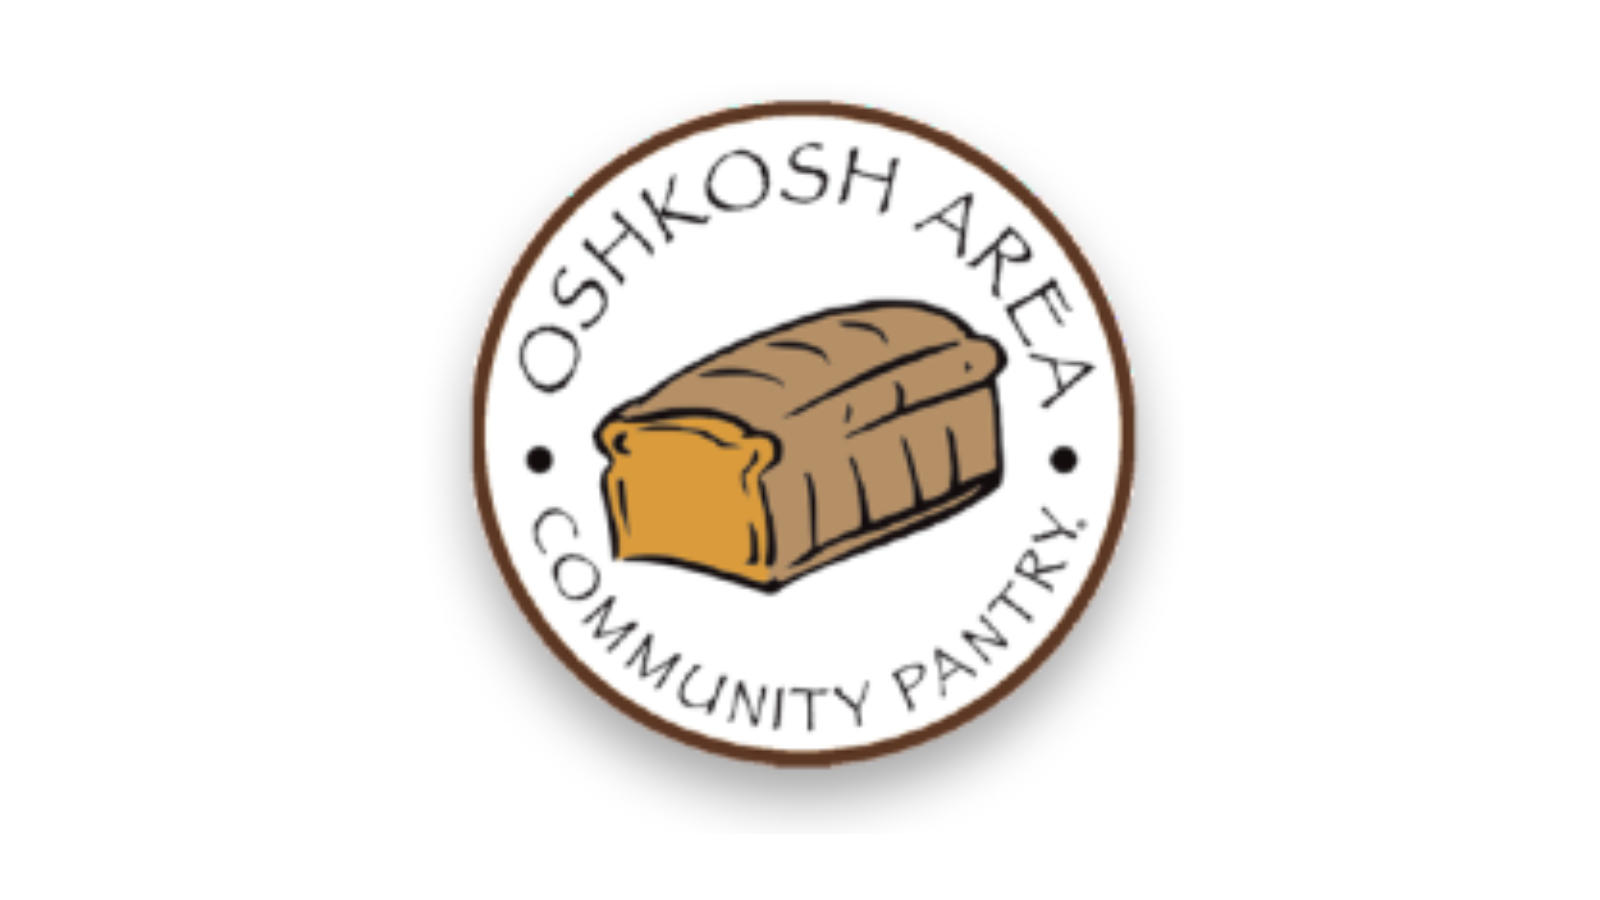 Oshkosh Area Community Pantry battles food insecurity